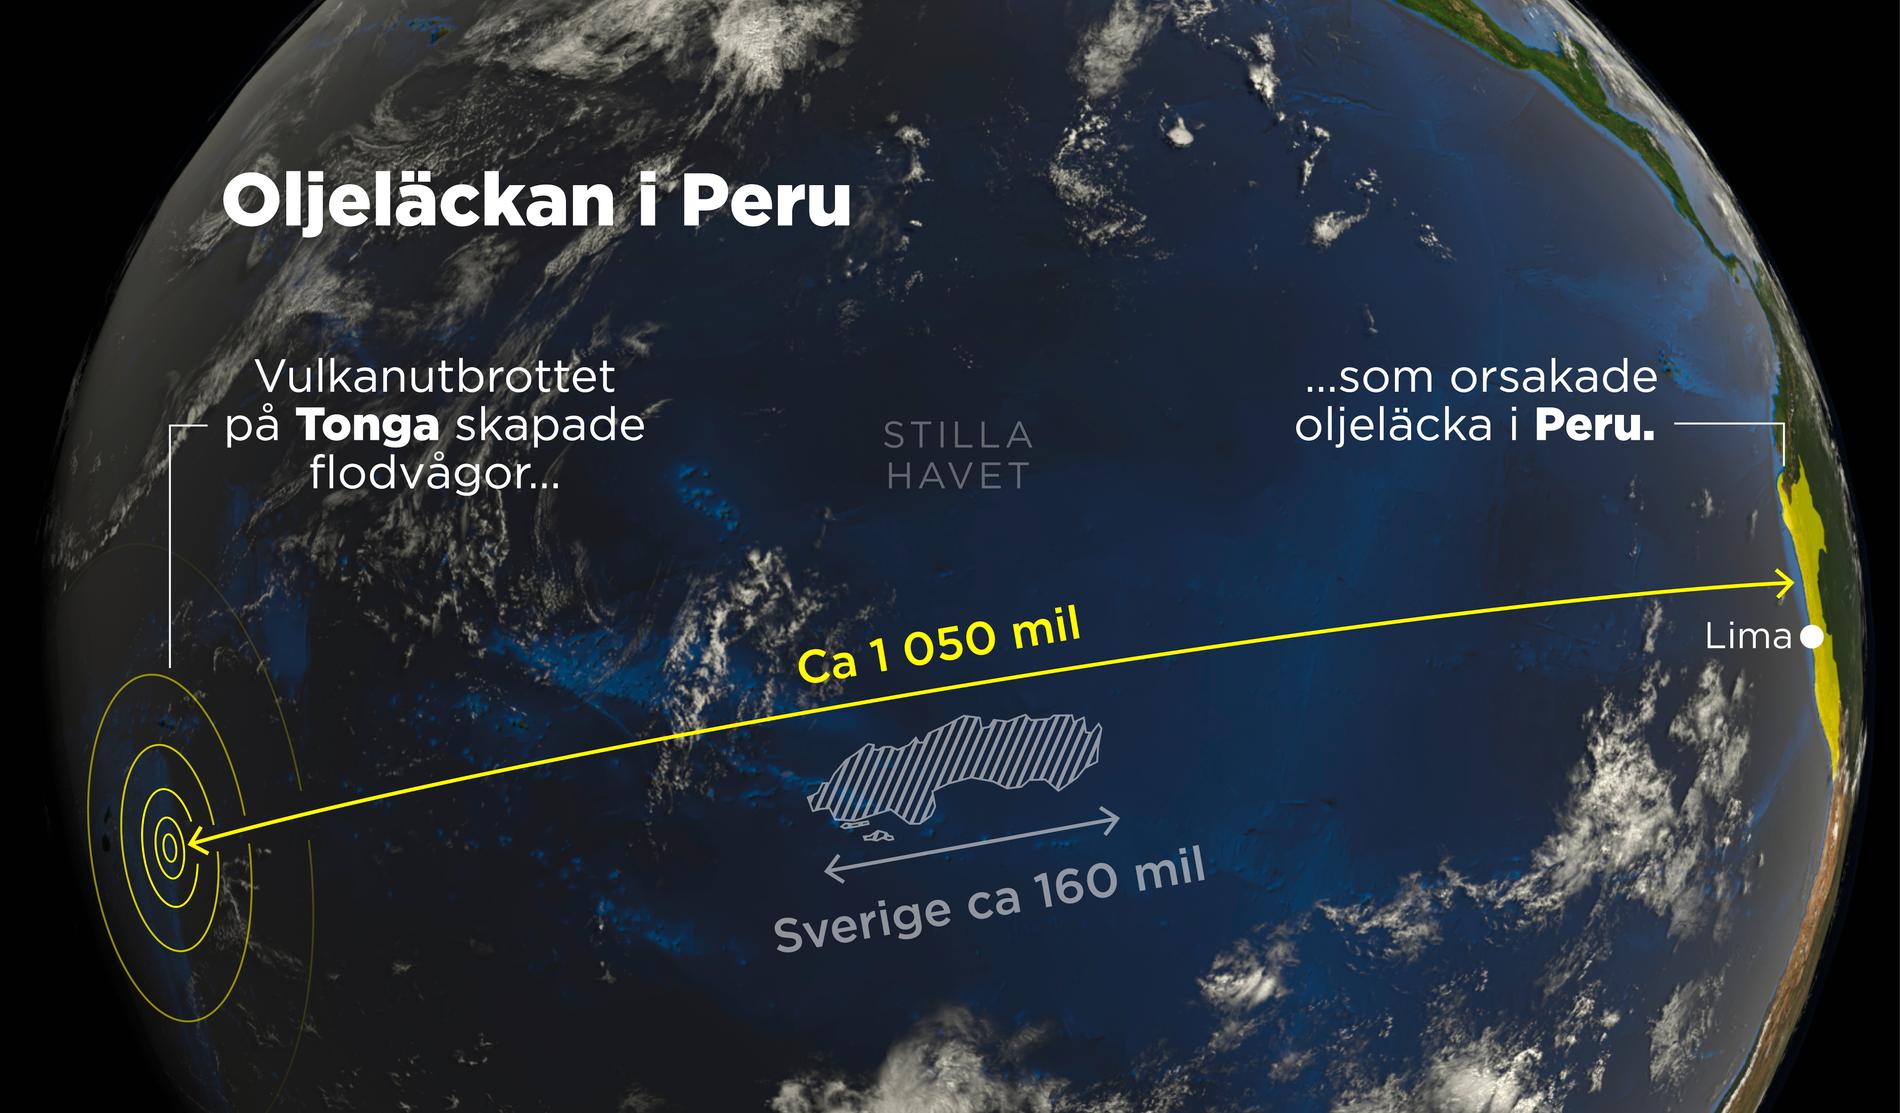 Karta som visar avståndet mellan Tonga och Peru.